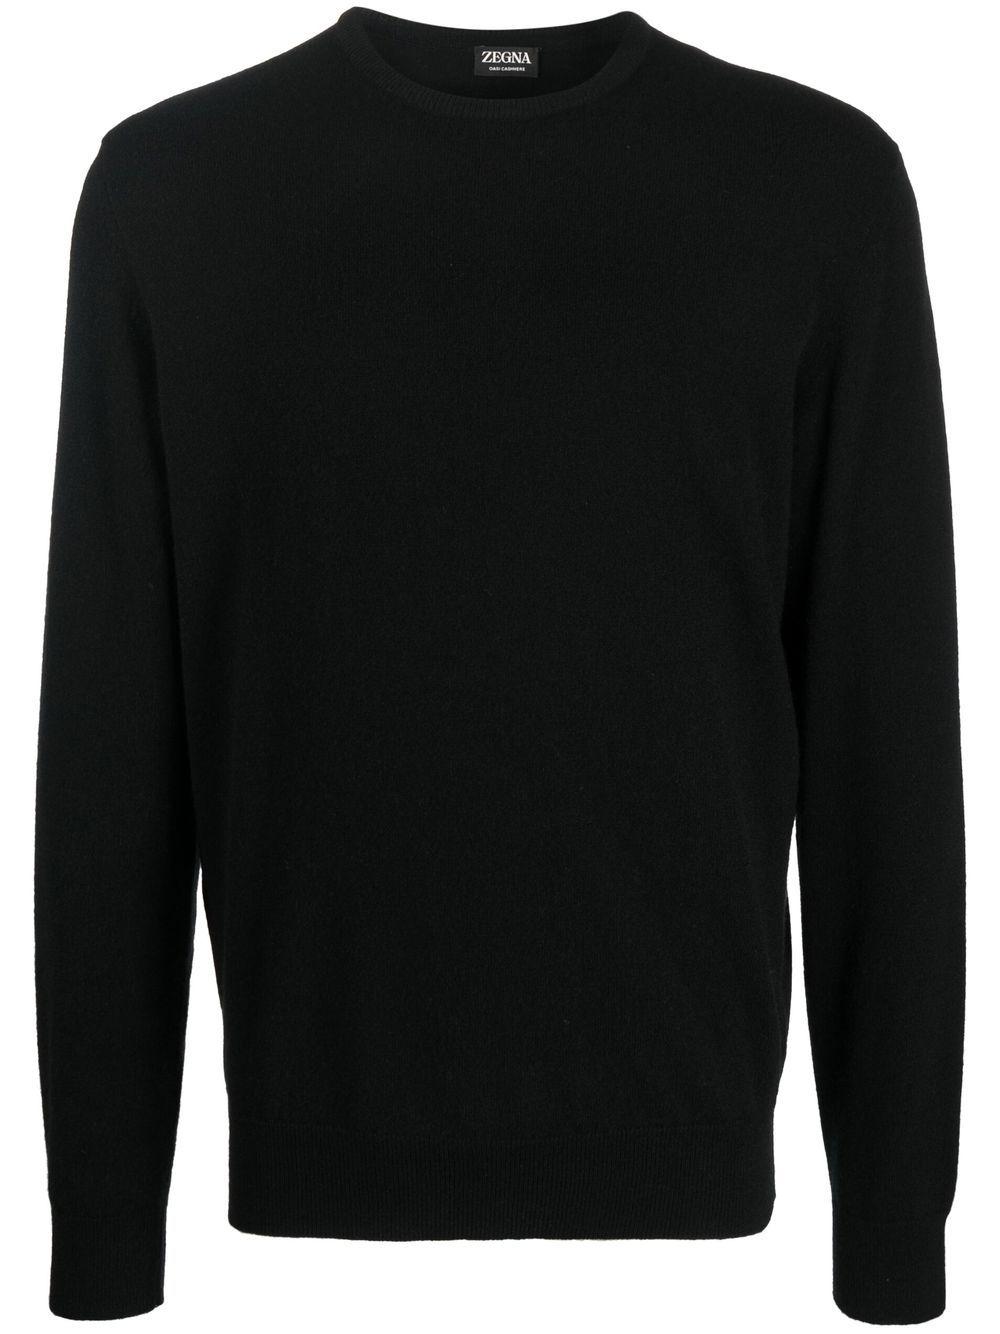 Zegna crew neck cashmere sweater - Black von Zegna